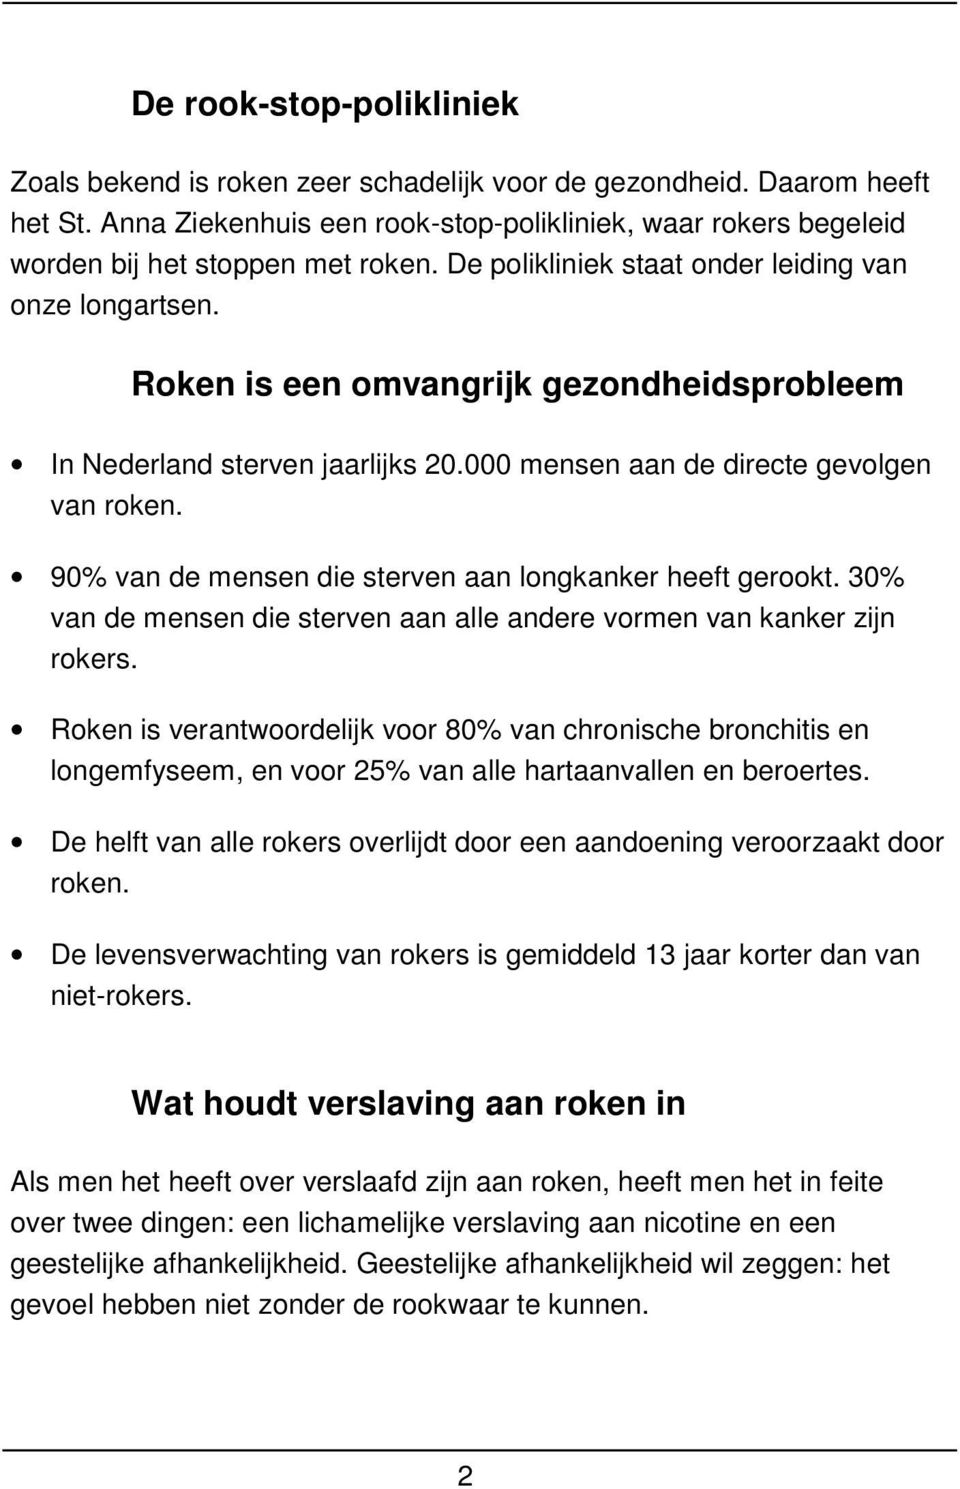 Roken is een omvangrijk gezondheidsprobleem In Nederland sterven jaarlijks 20.000 mensen aan de directe gevolgen van roken. 90% van de mensen die sterven aan longkanker heeft gerookt.